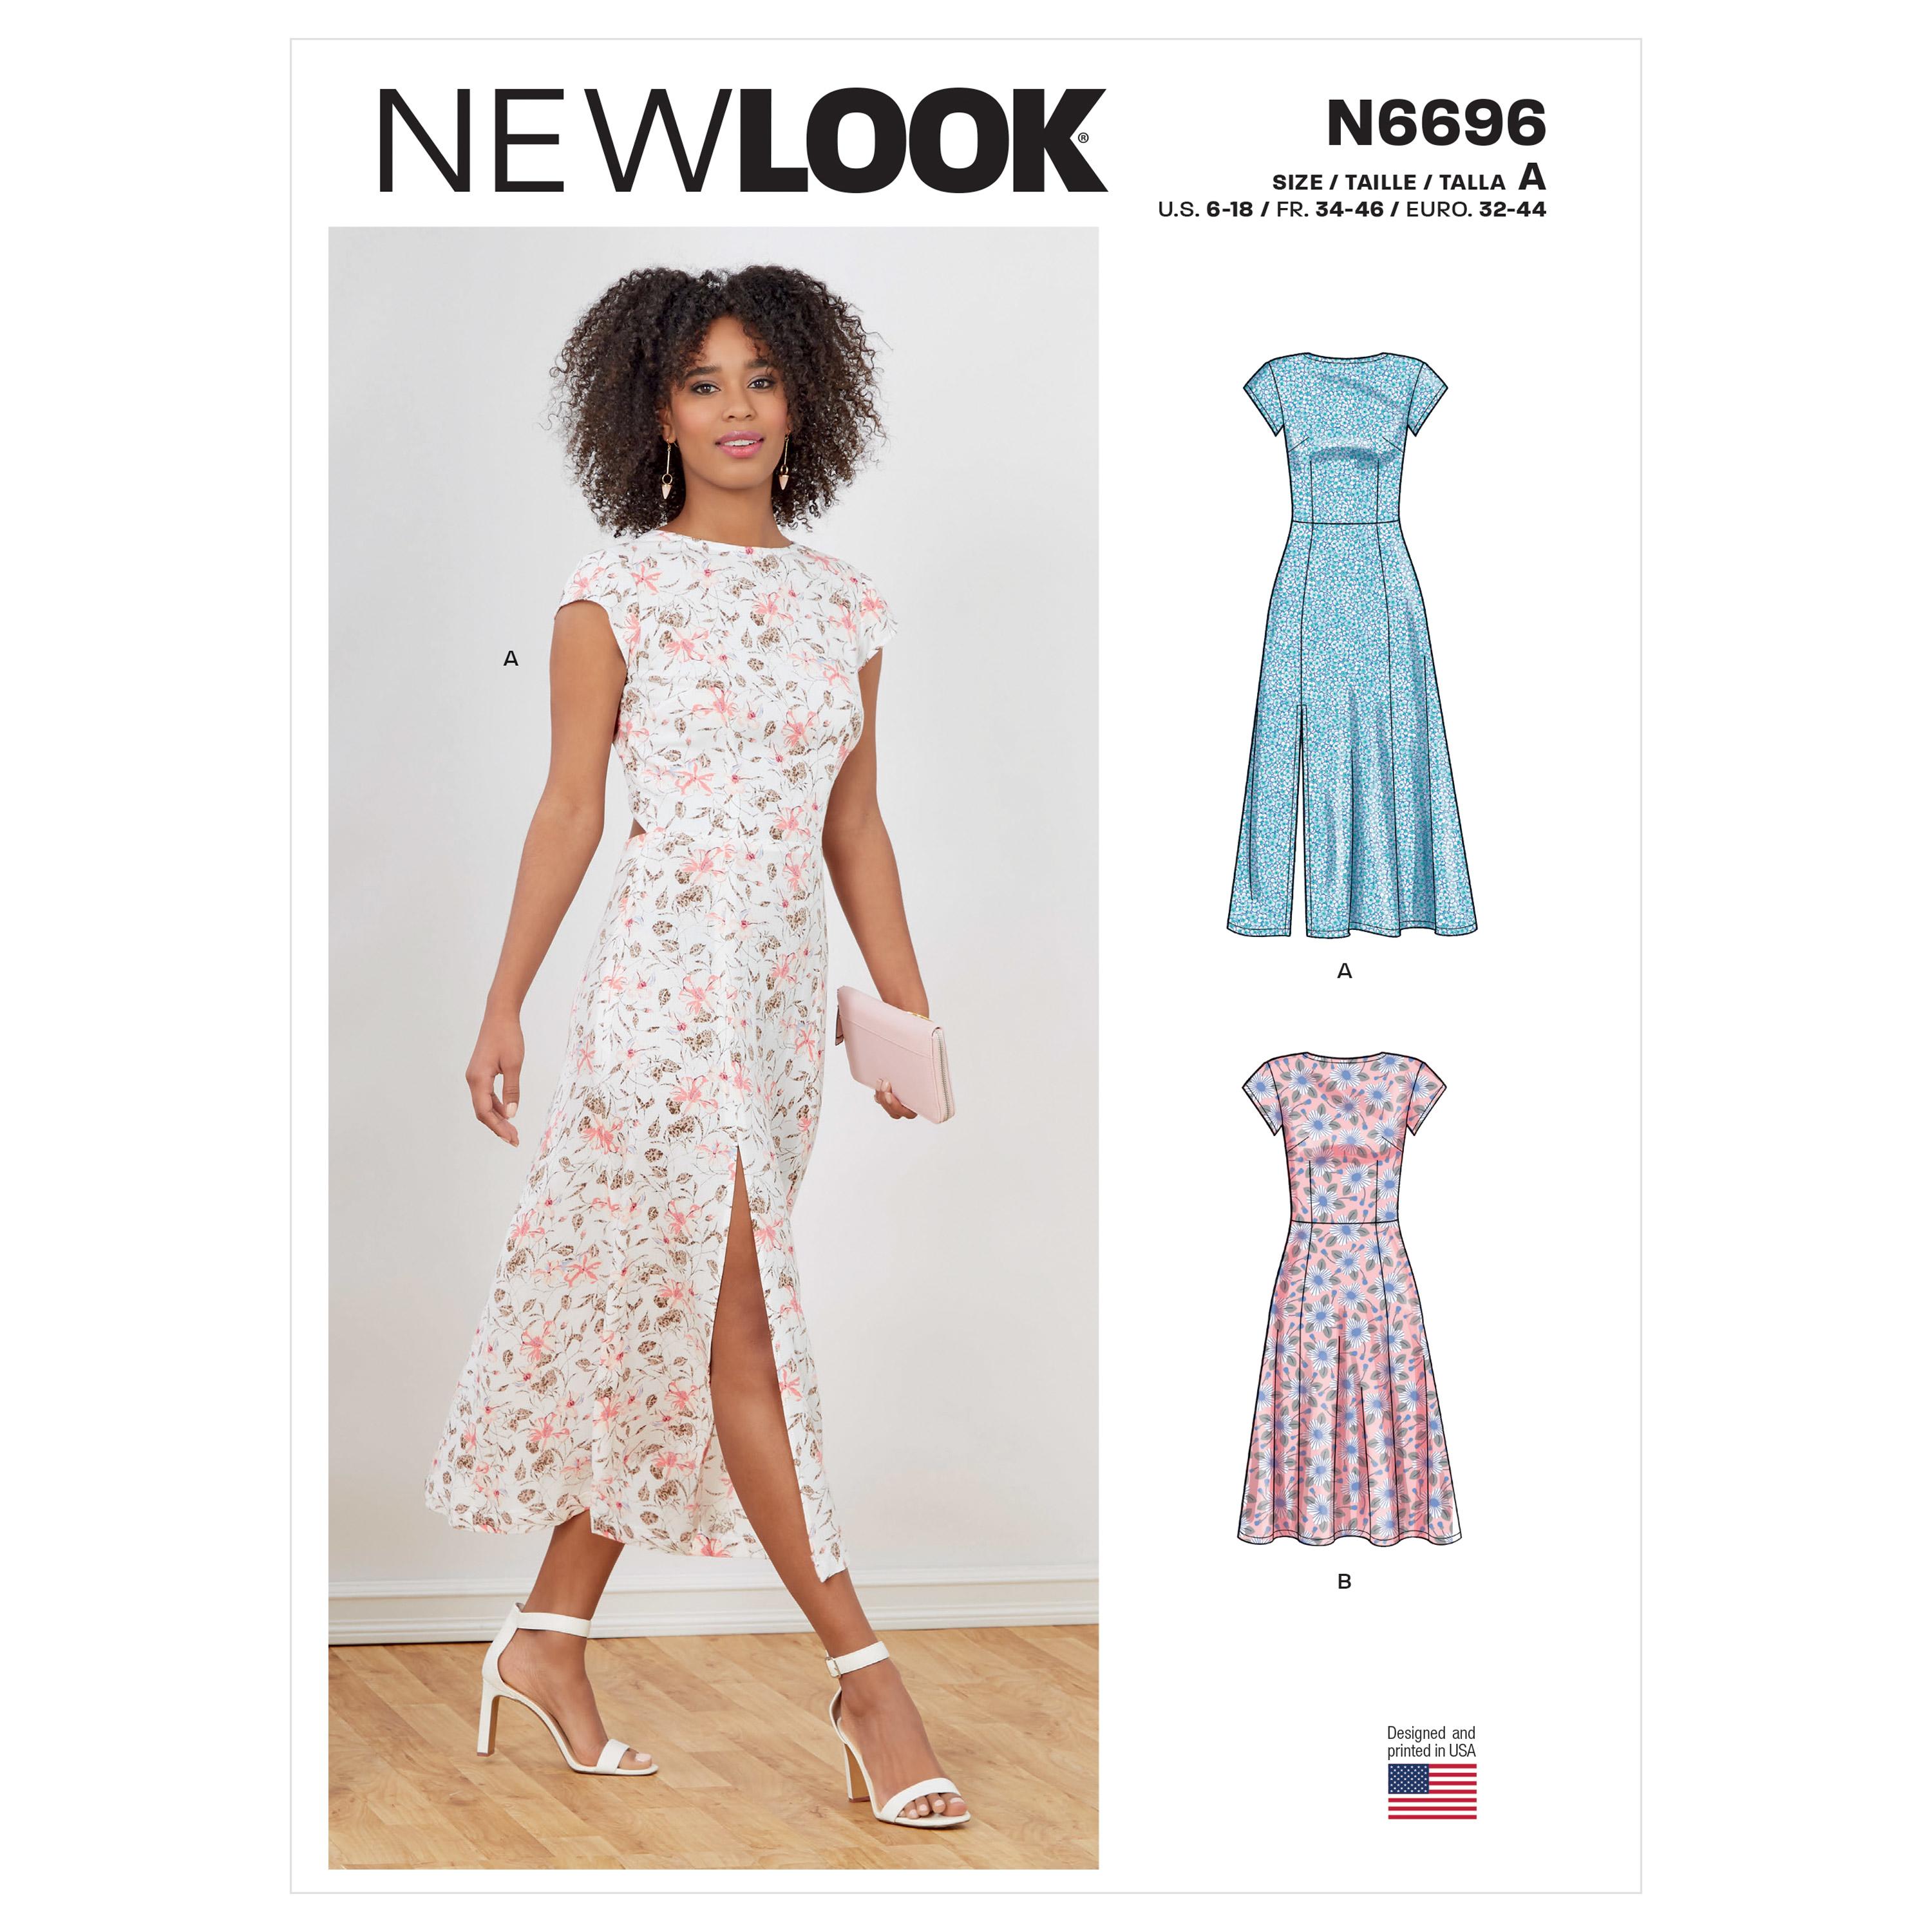 New Look Sewing Pattern N6696 Misses' Dresses